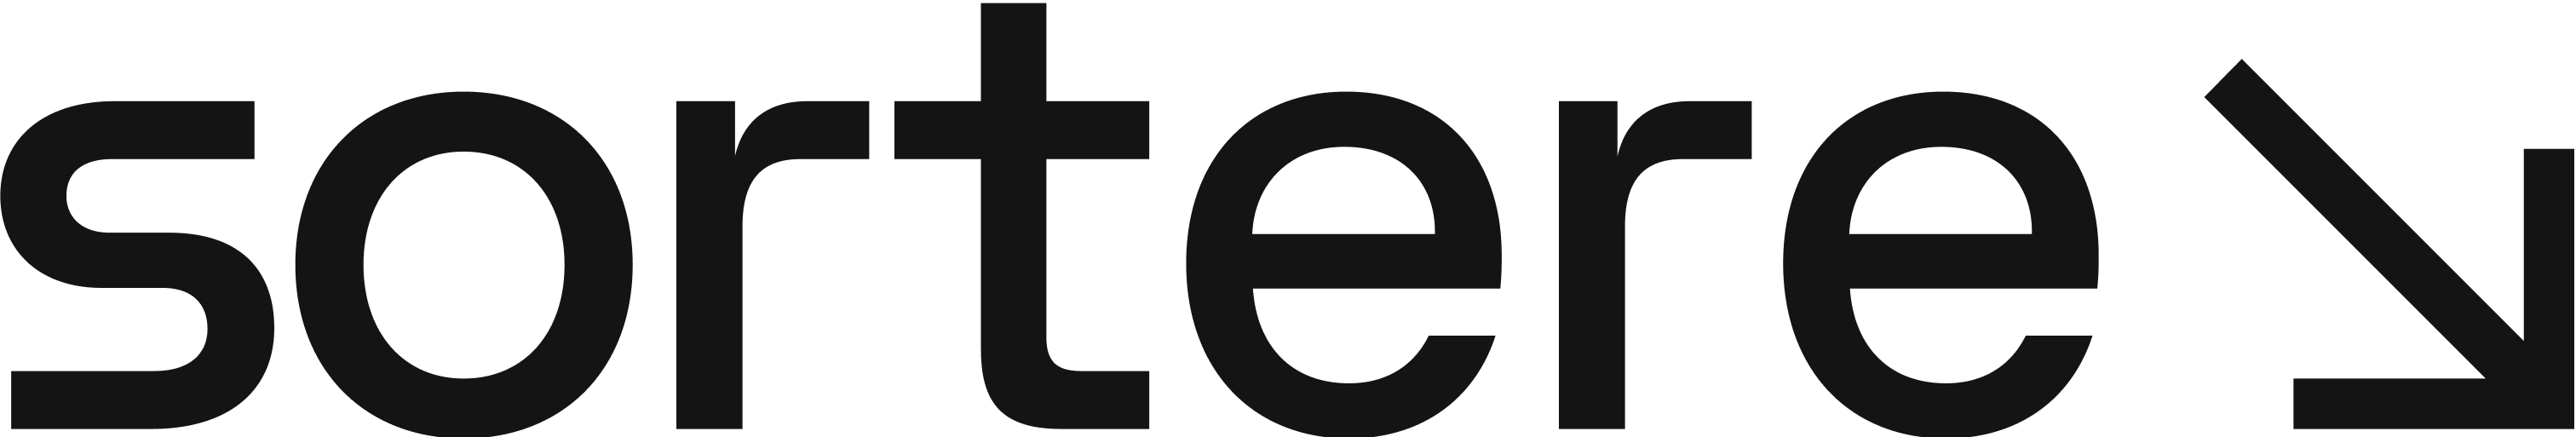 Sortere Logo